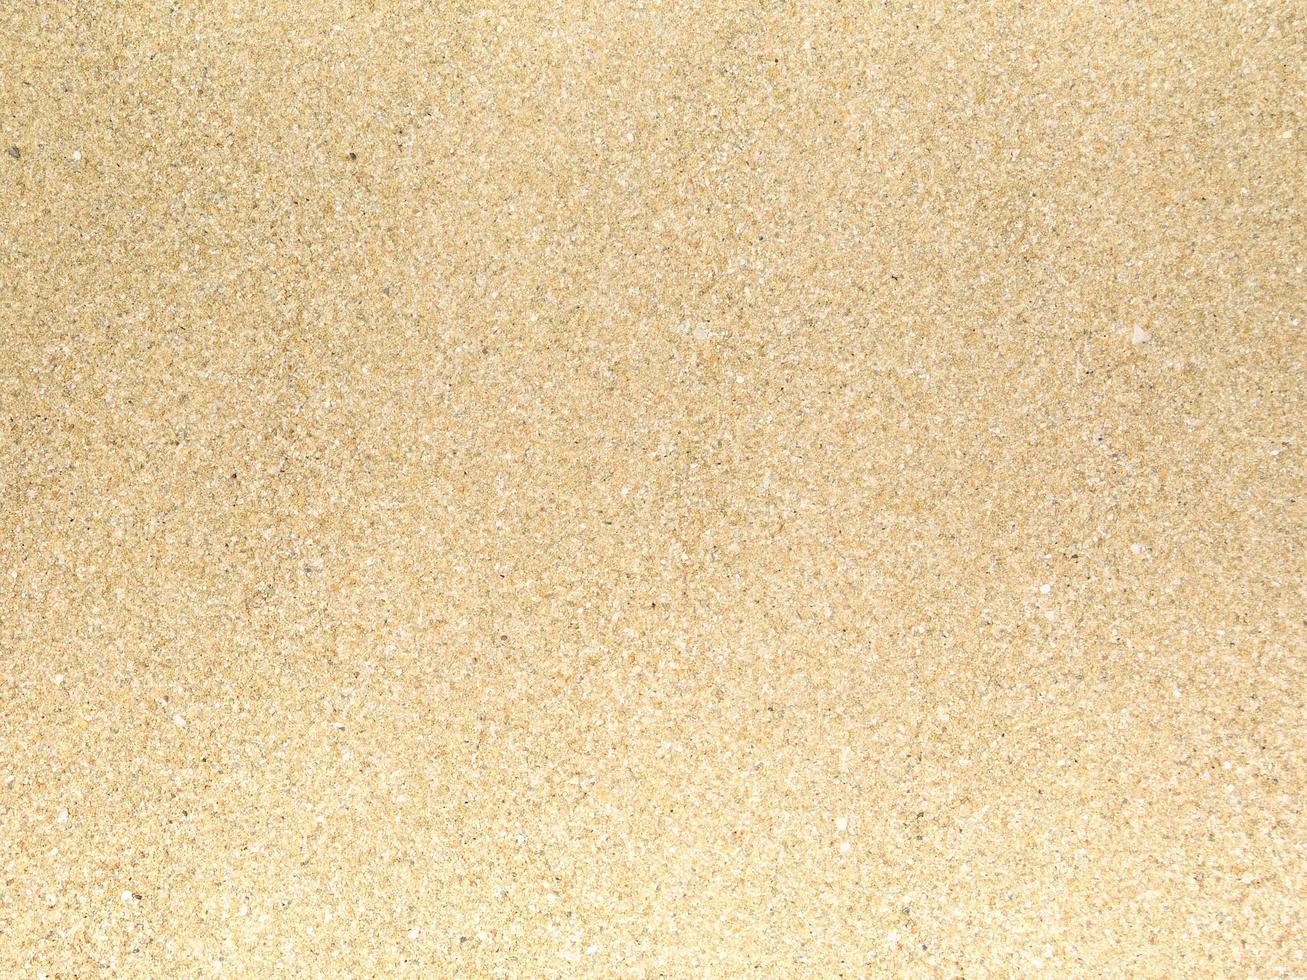 trama di sabbia all'aperto foto